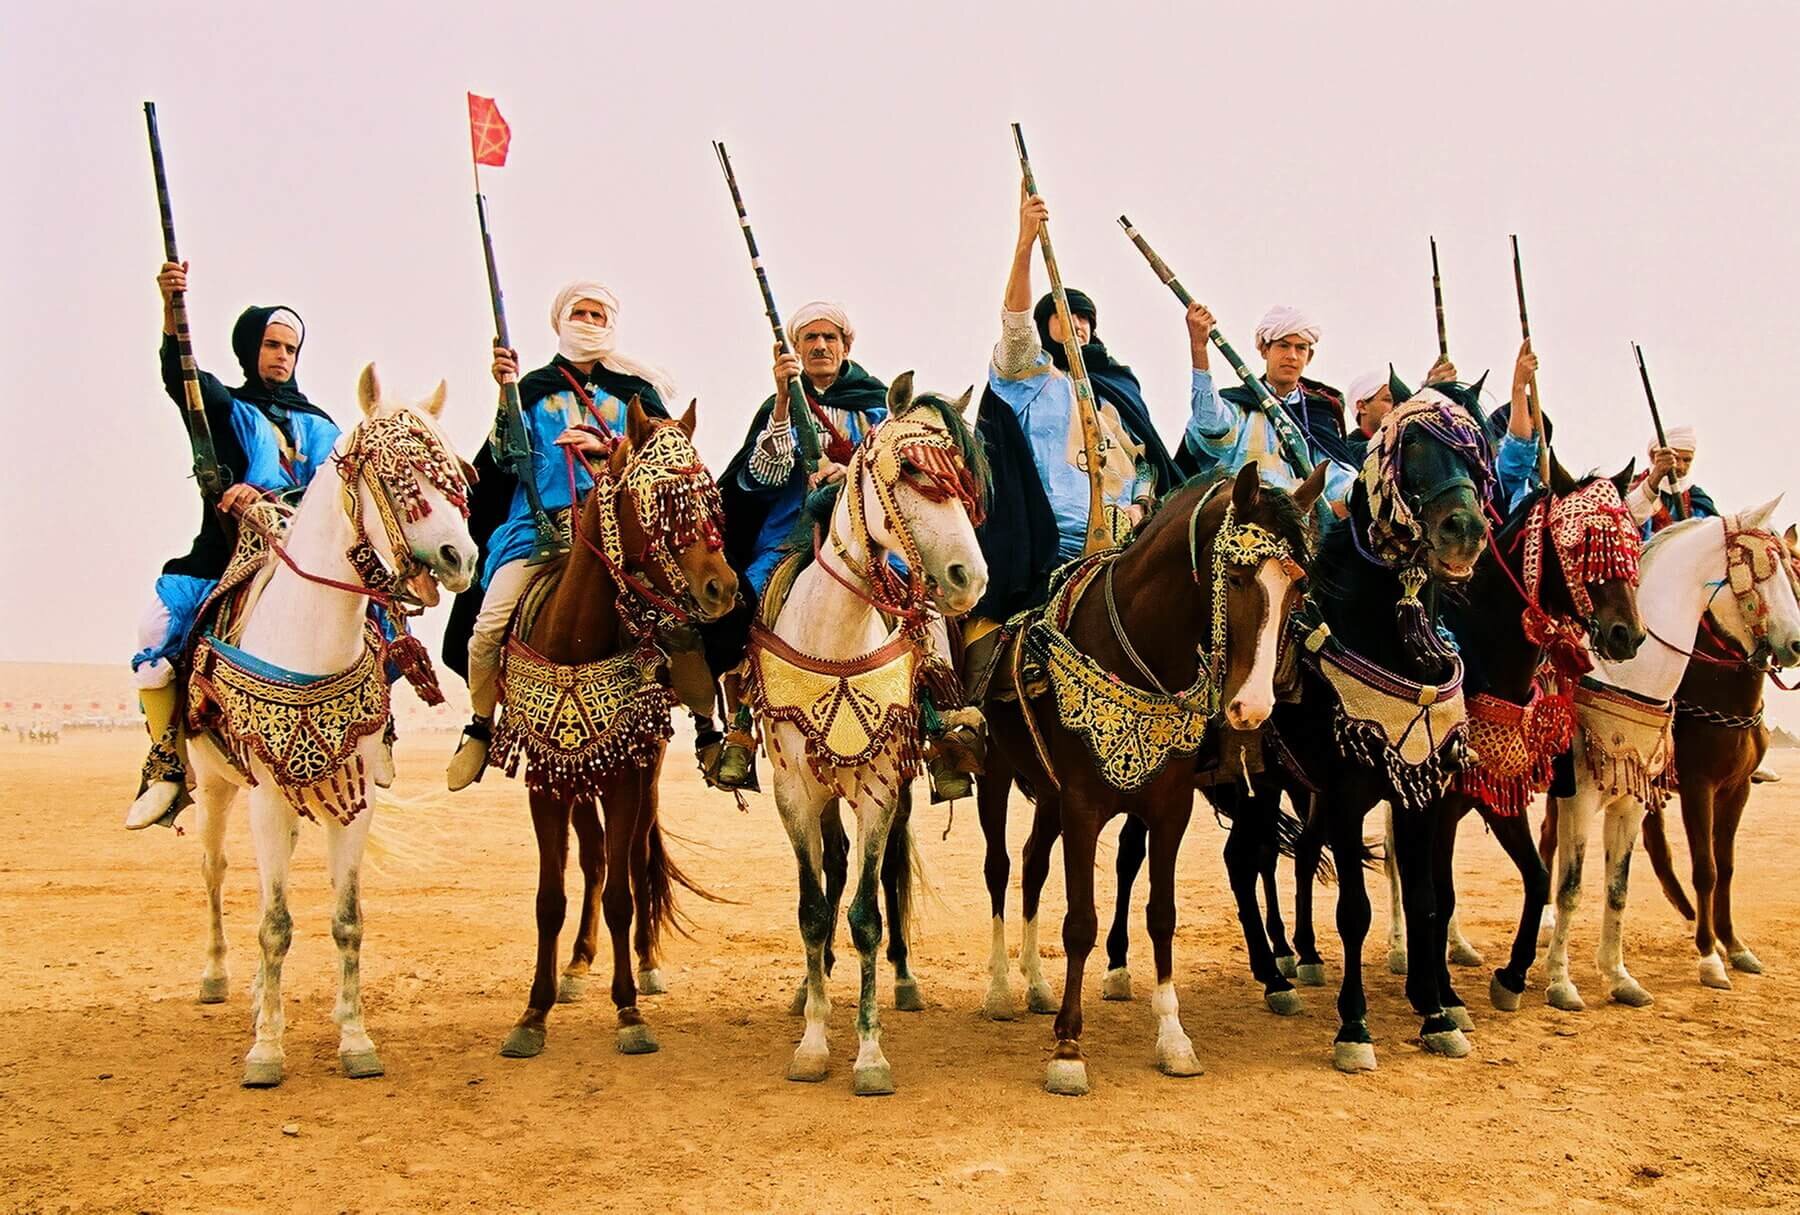 Bedouin-Berber Tribesmen III. Photograph © 2021 H. Allen Benowitz. All Rights Reserved.